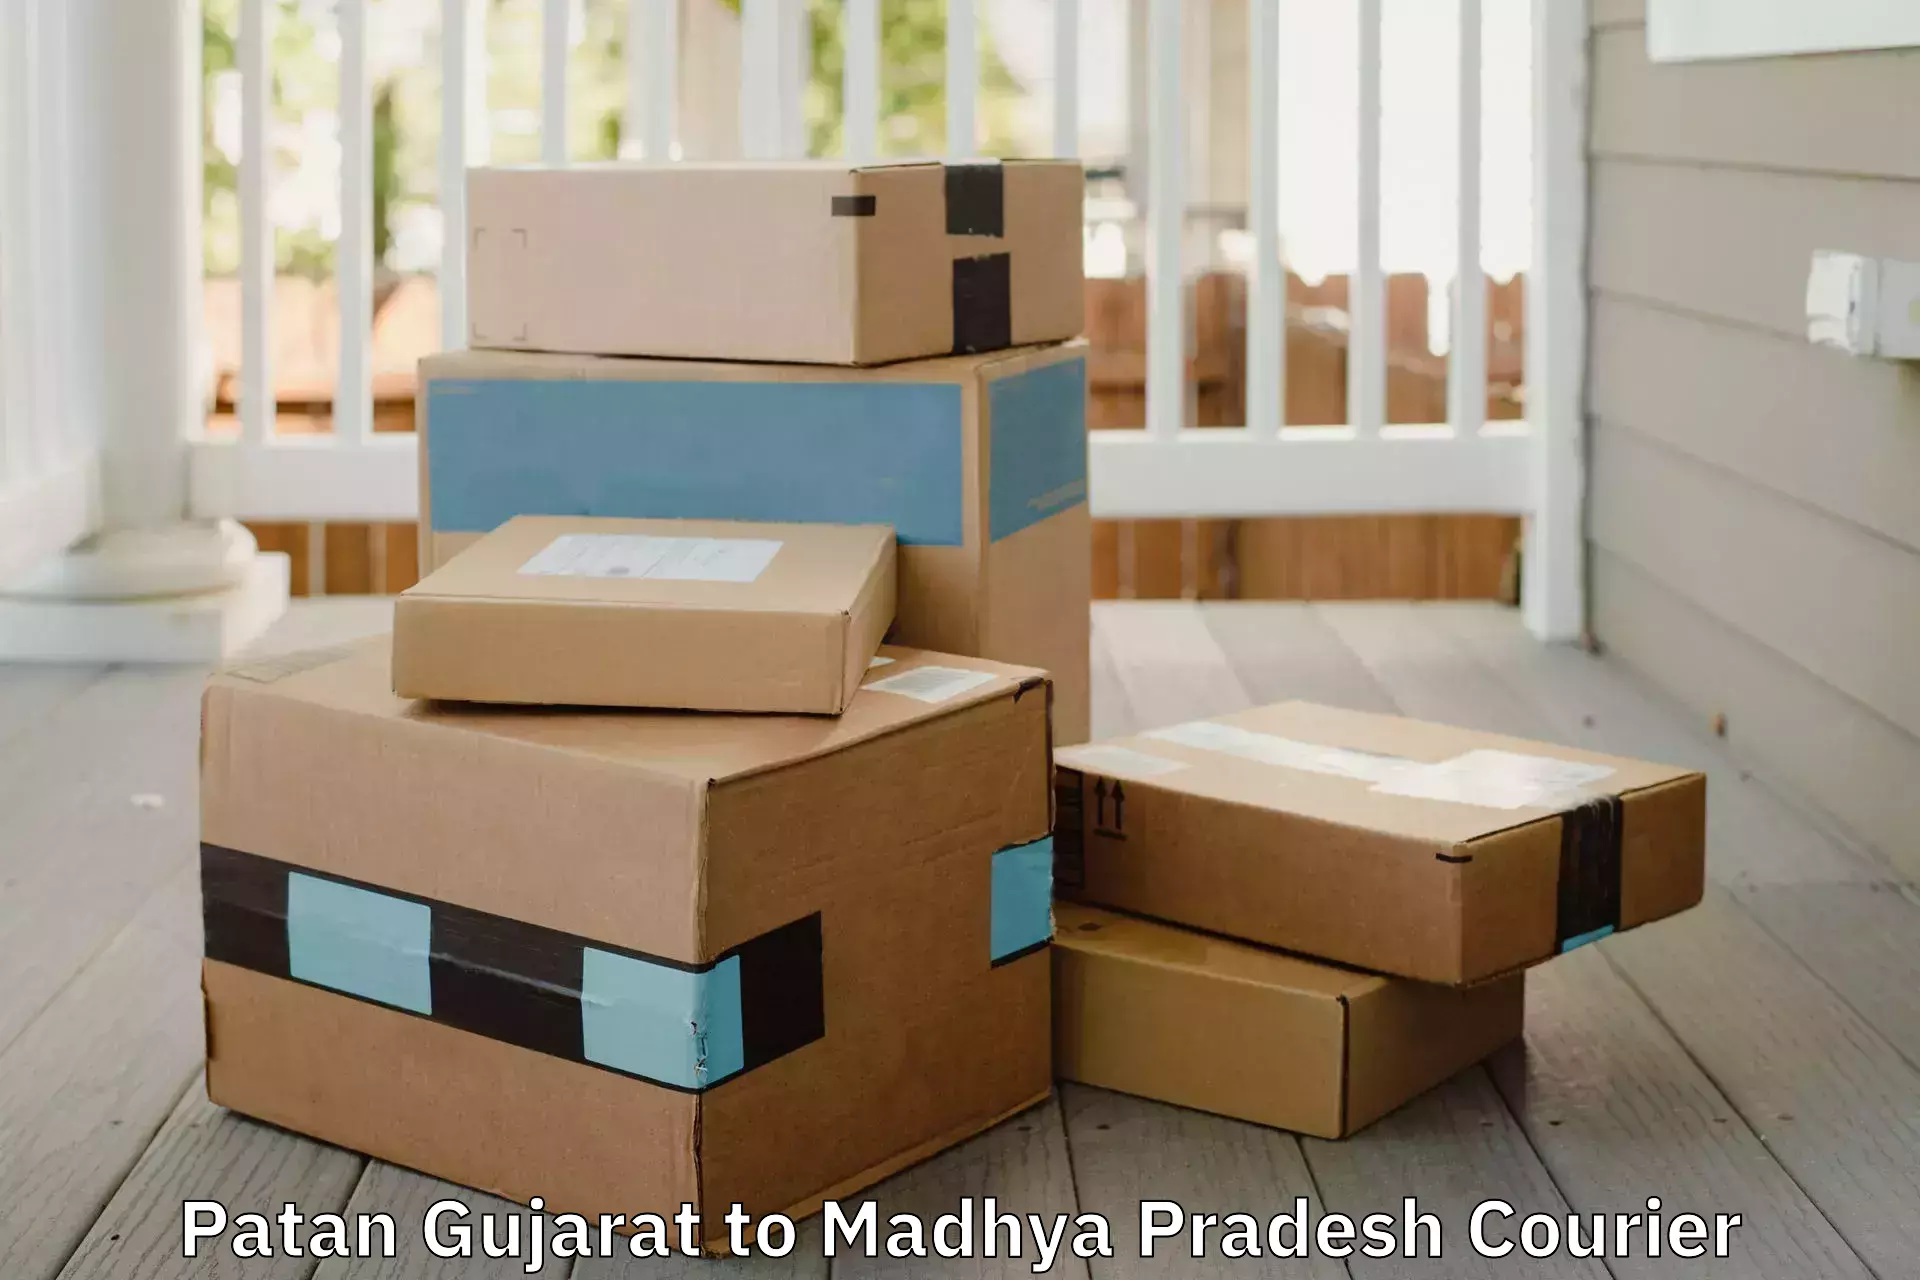 Trusted furniture movers Patan Gujarat to Garh Rewa